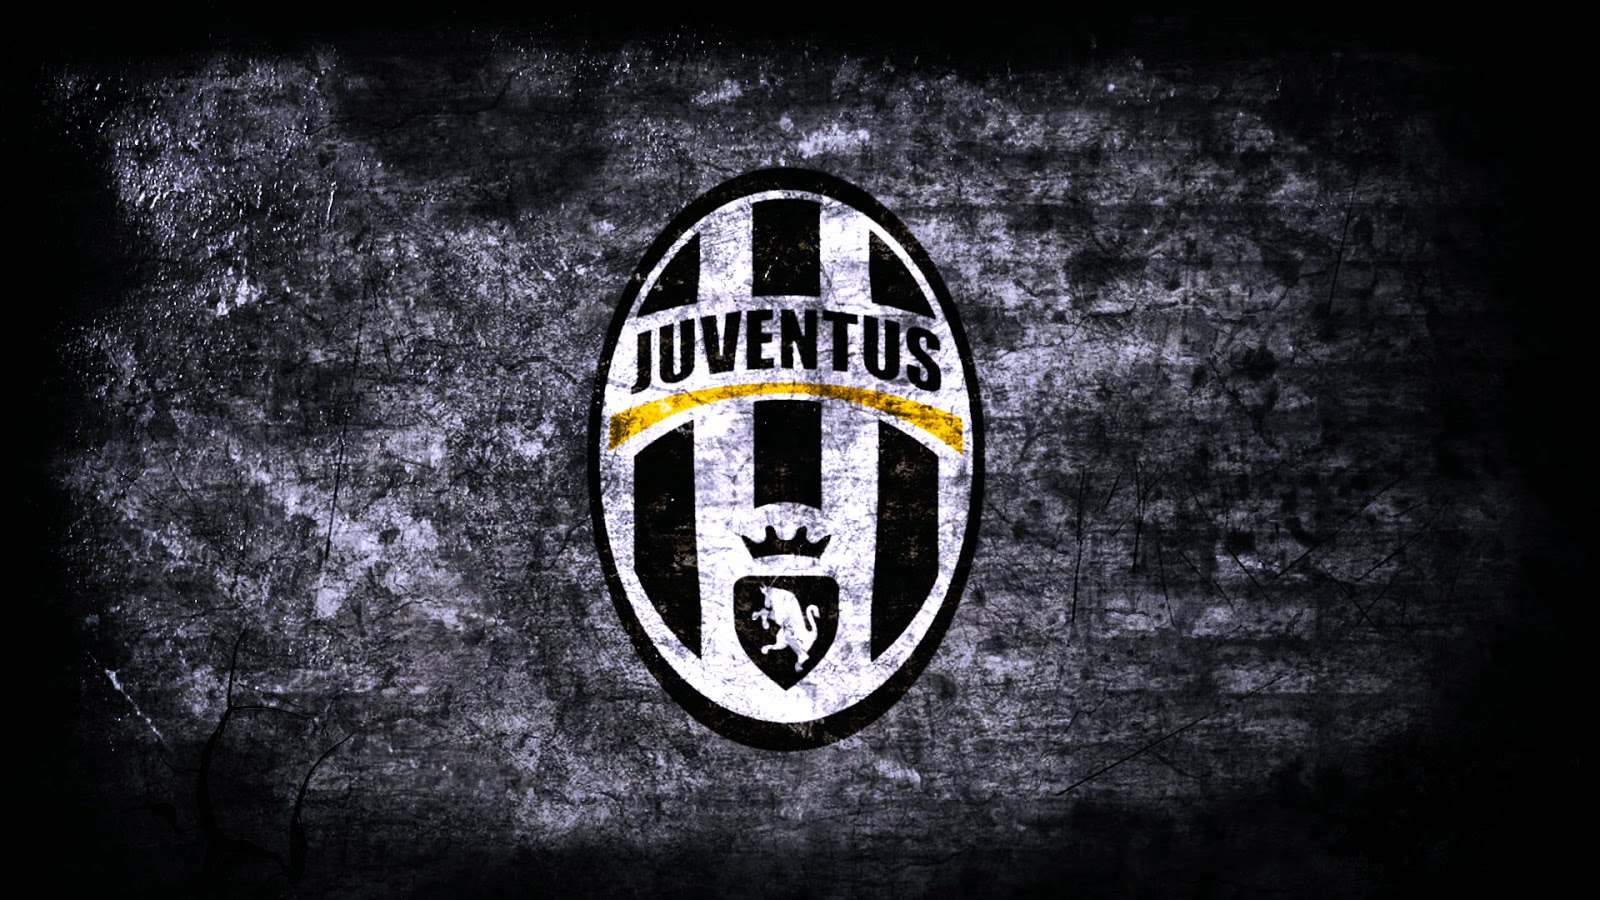 Free Download Juventus Football Club Wallpaper HD Download Free